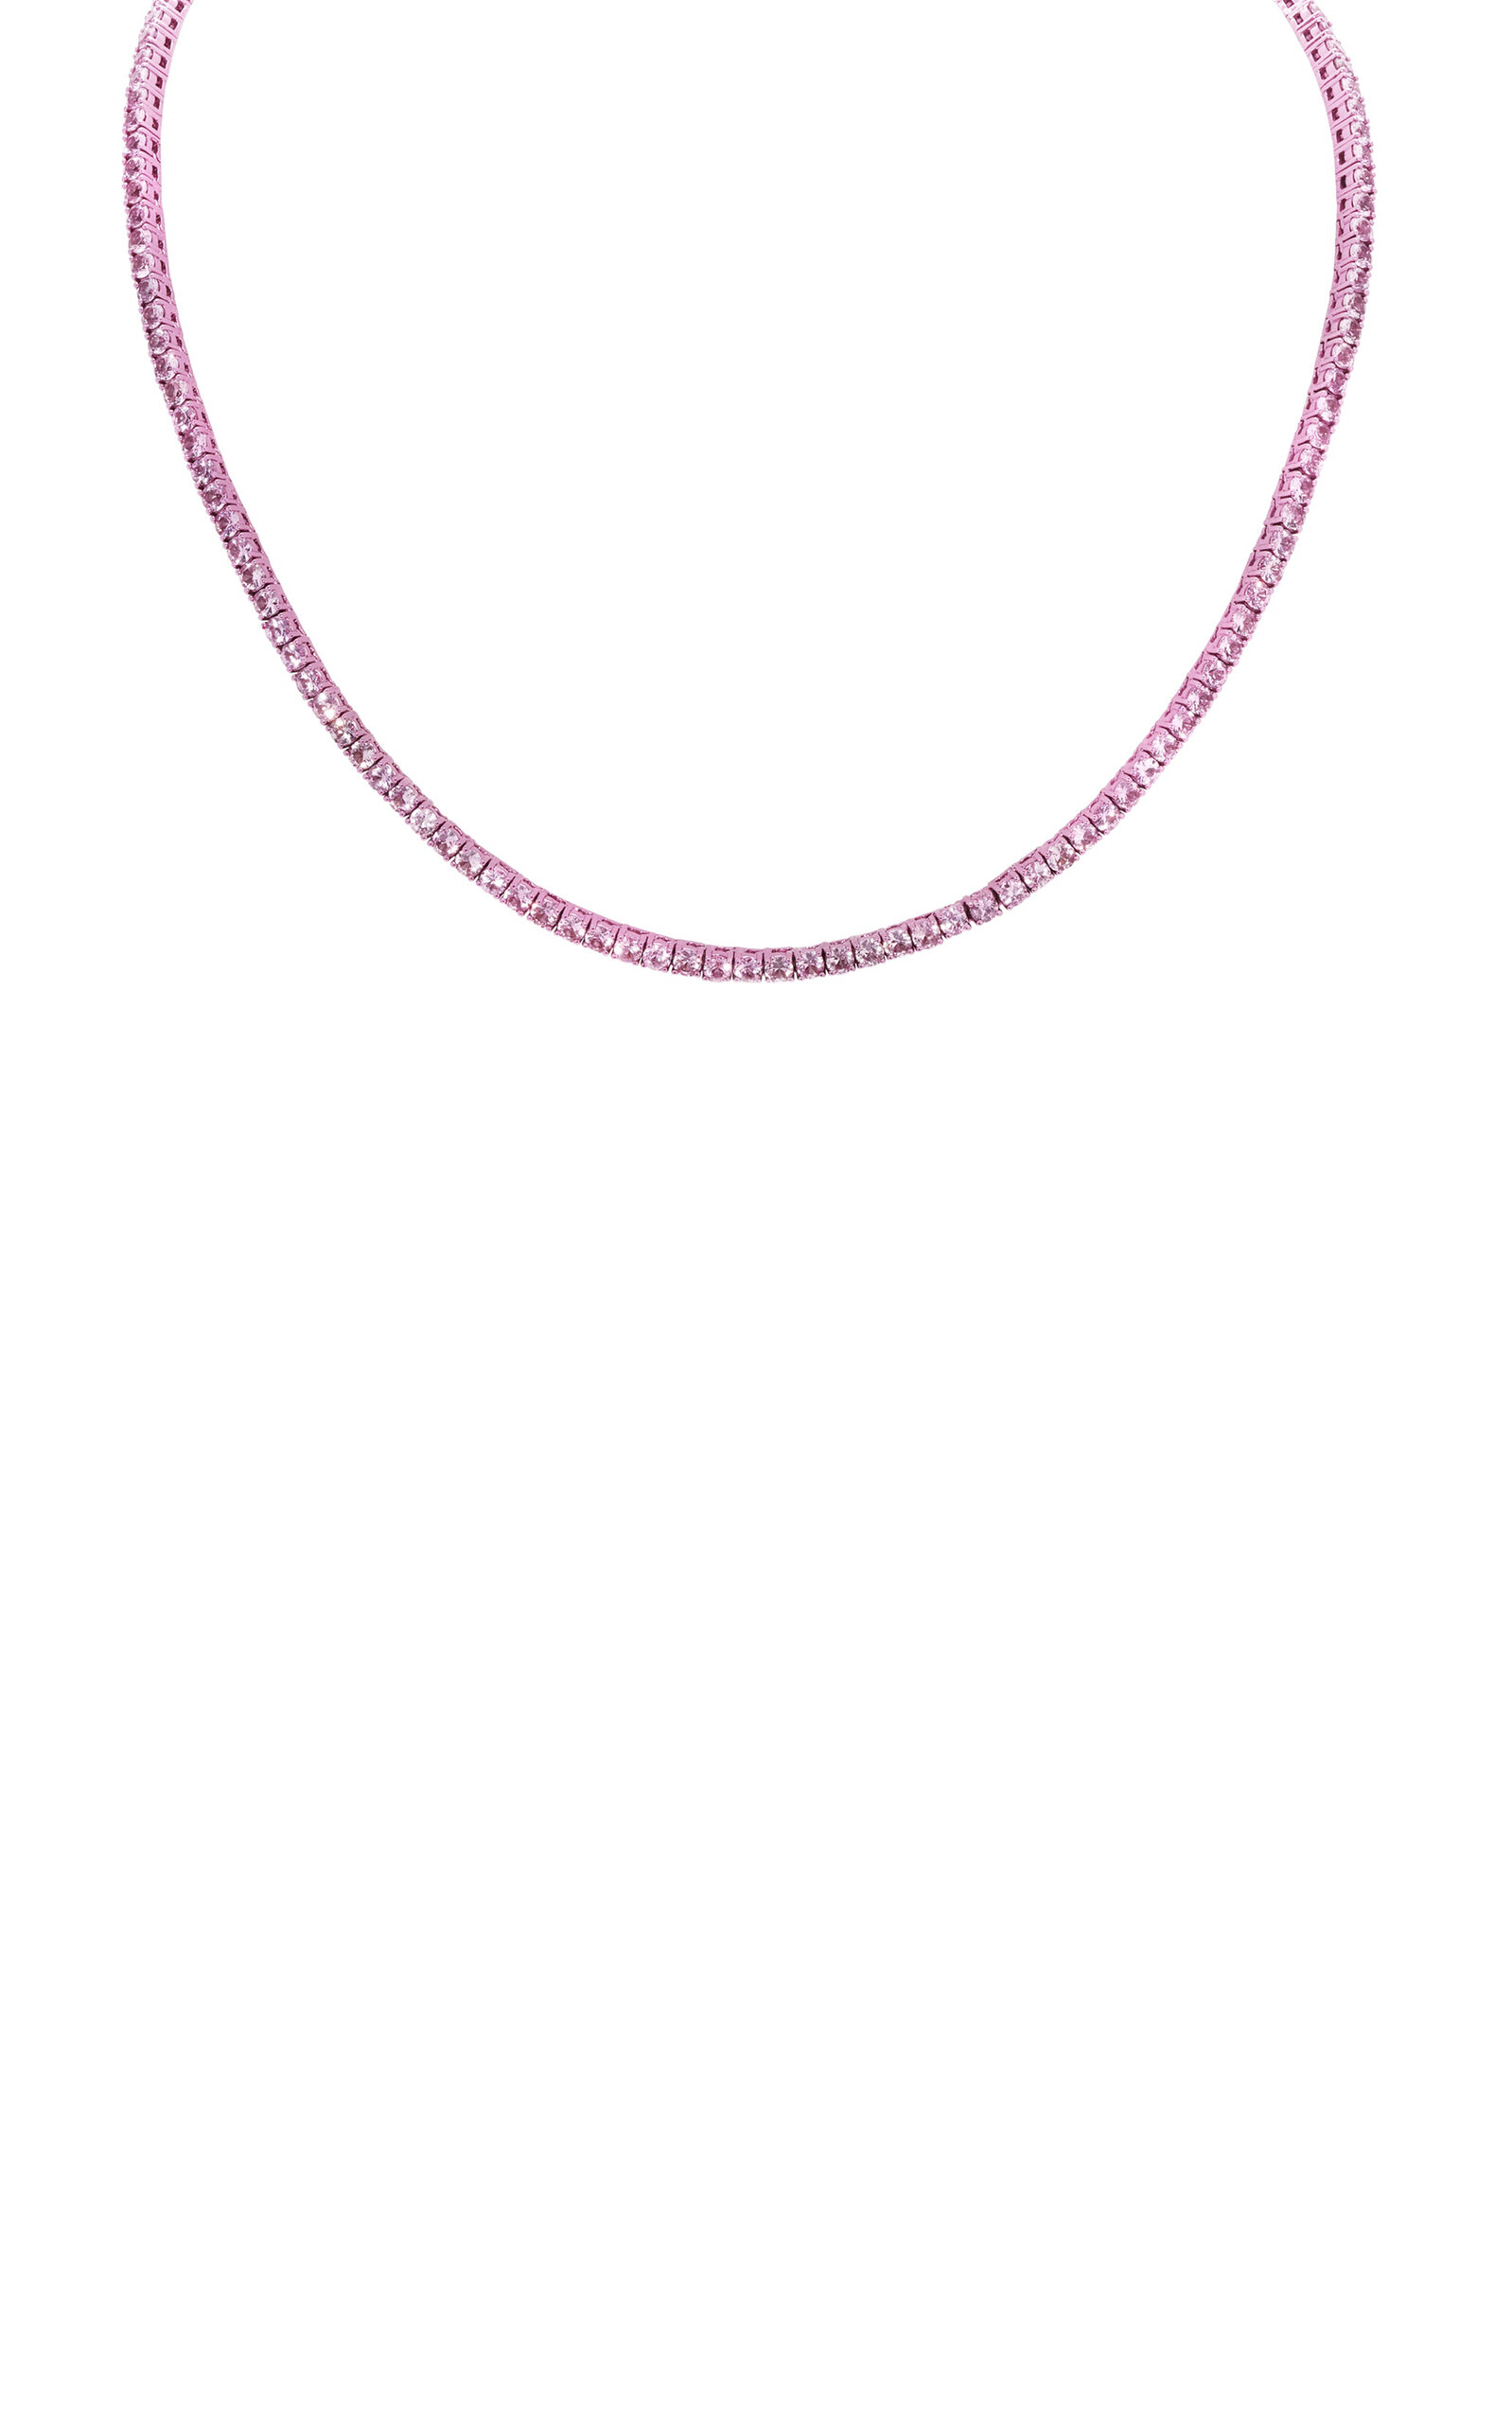 18k White Gold with Pink Rhodium Pink Sapphire & Pink Rhodium Tennis Necklace